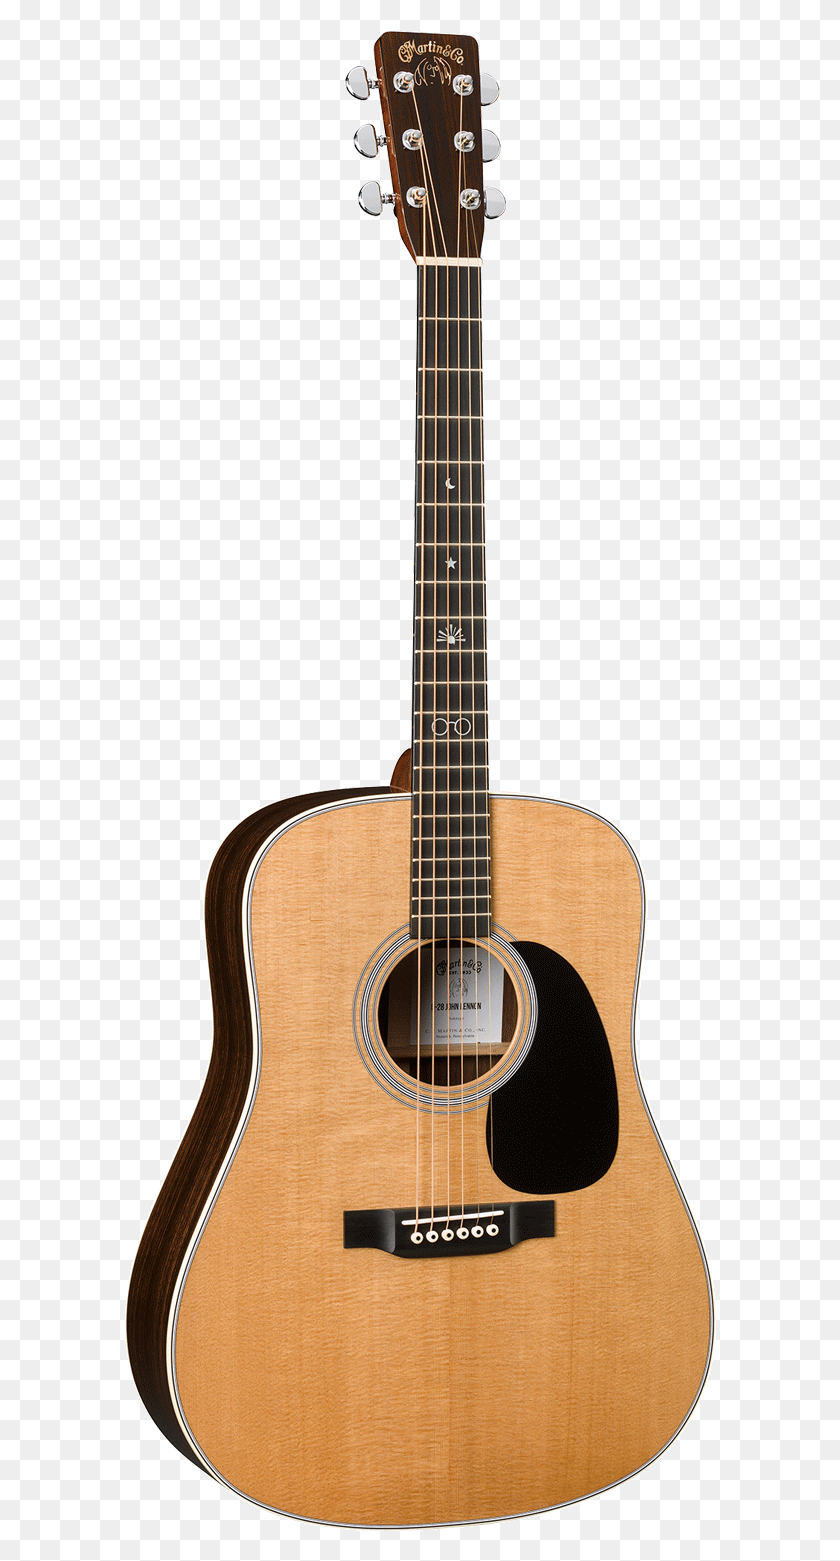 592x1501 Descargar Png Guitarra Acústica Tanglewood, Actividades De Ocio, Instrumento Musical, Bajo Hd Png